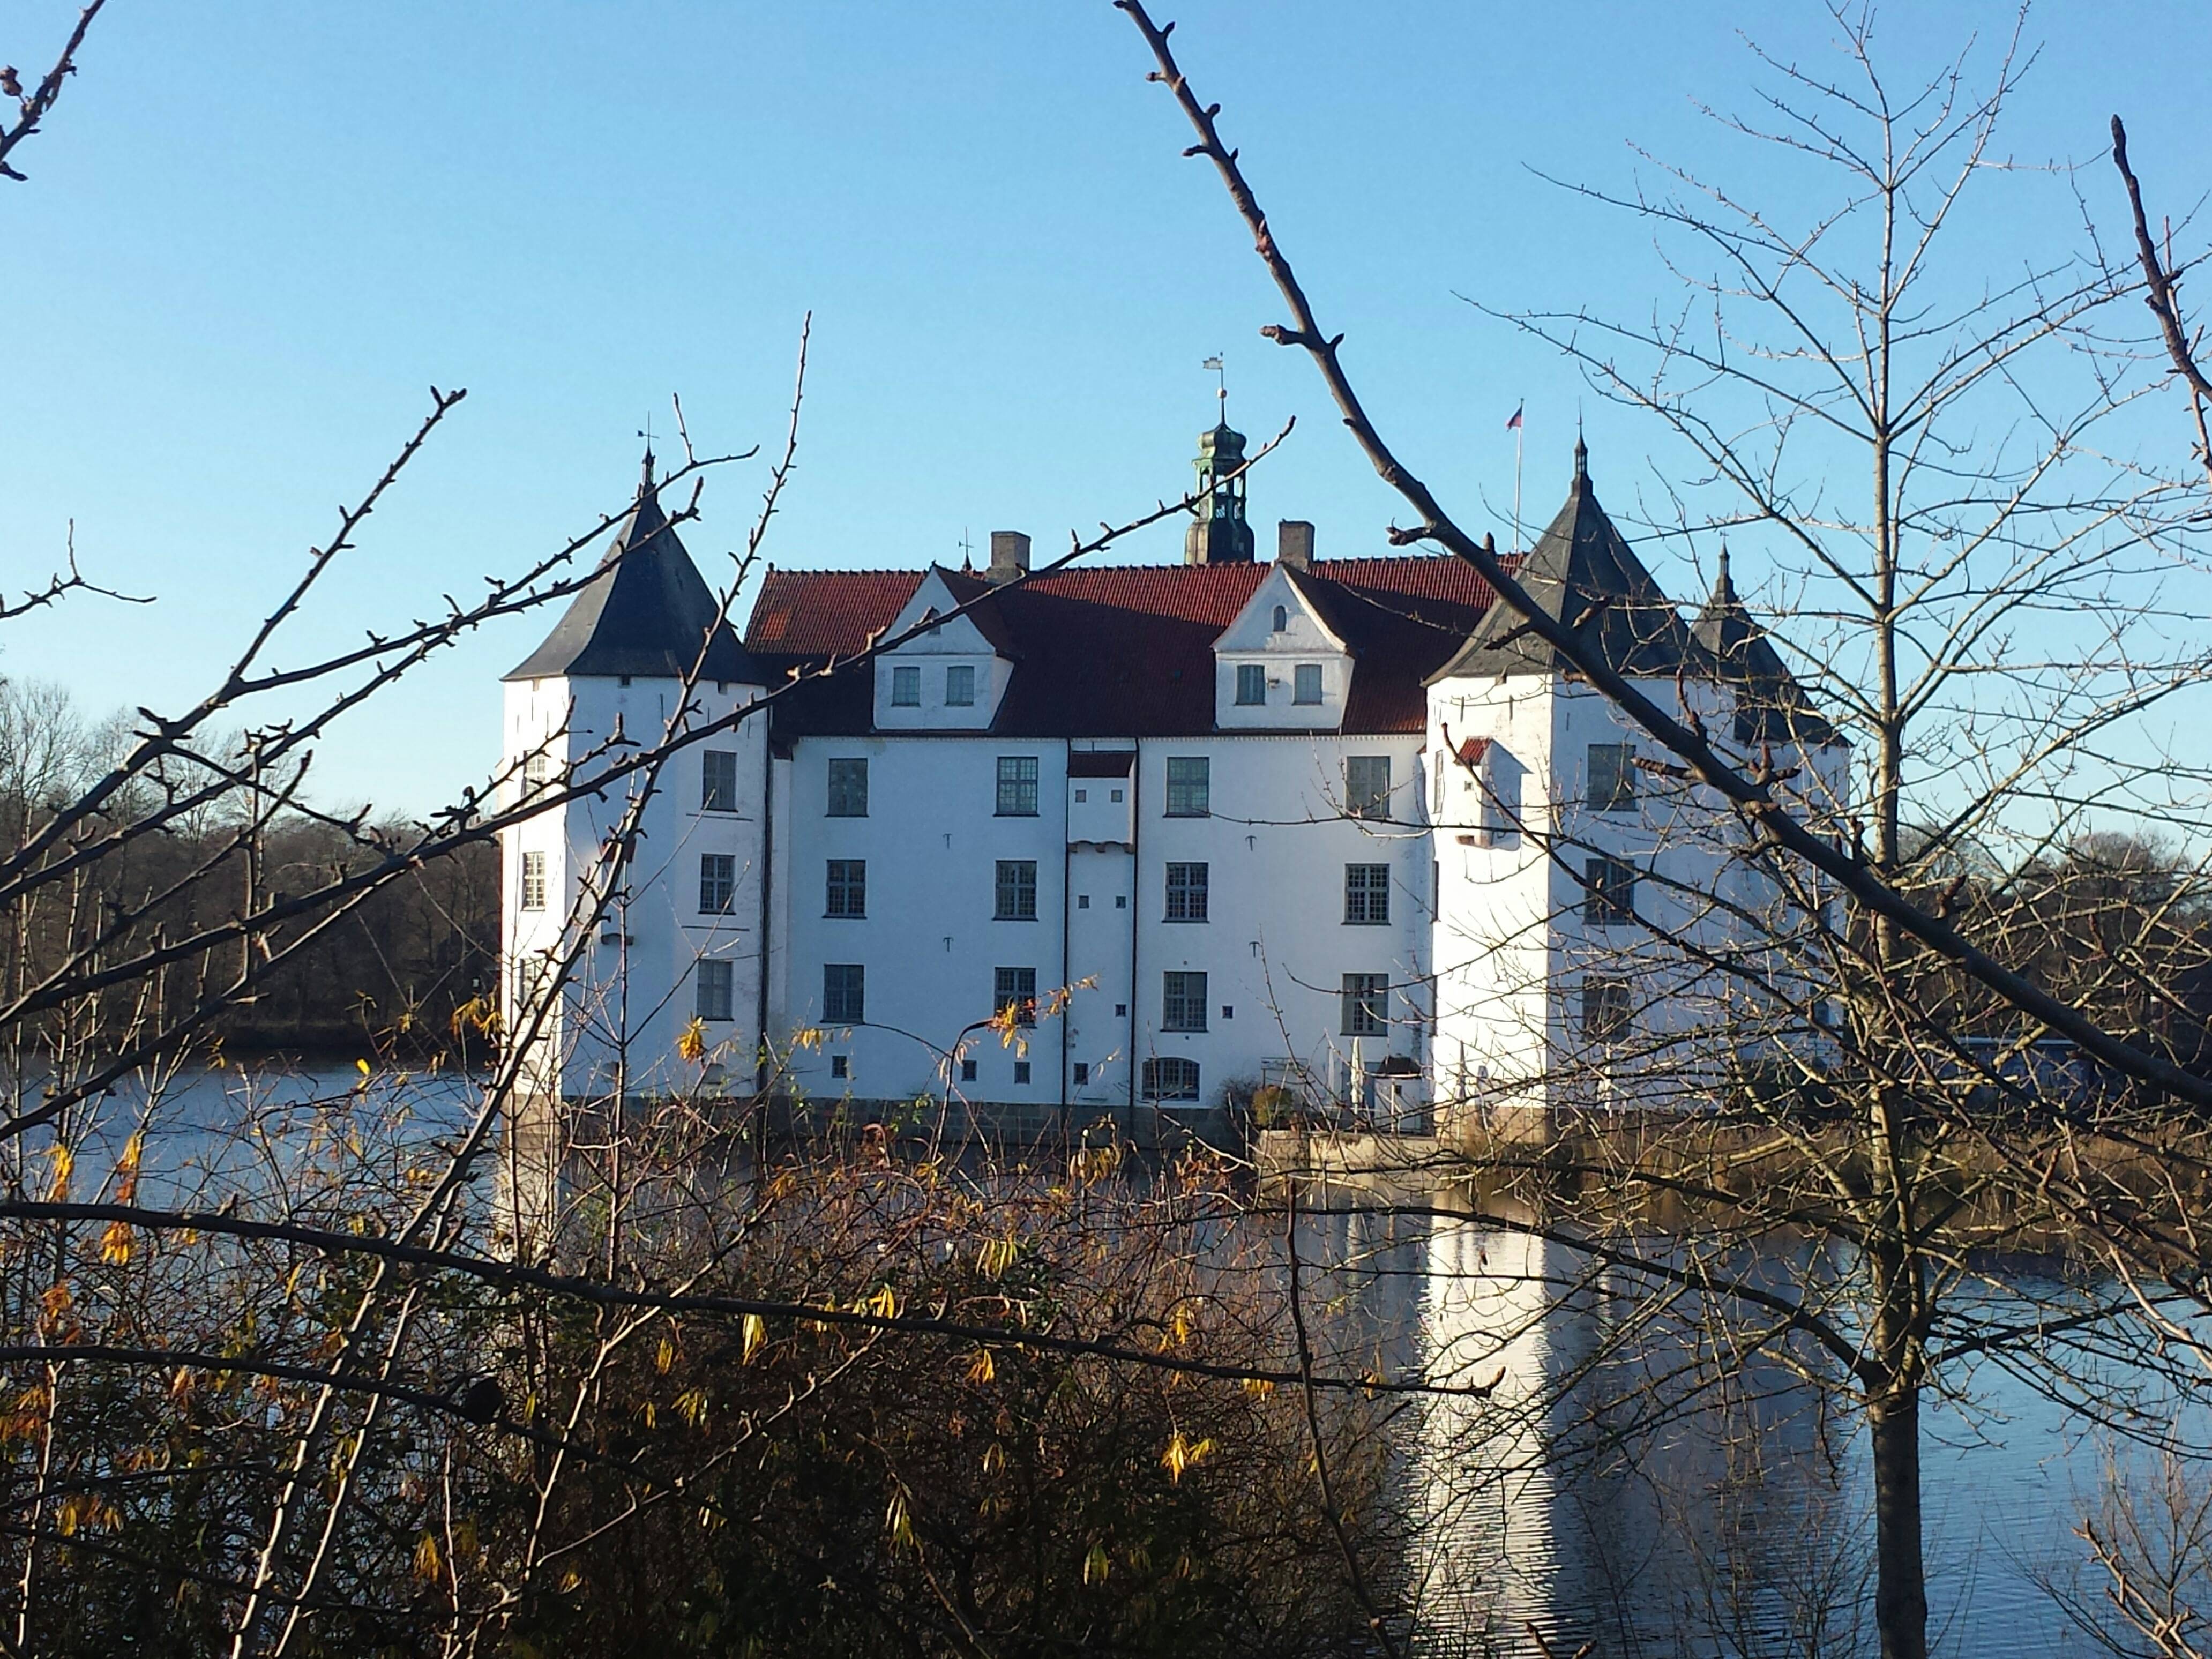 Bild 1 Schlossverwaltung Glücksburg in Glücksburg